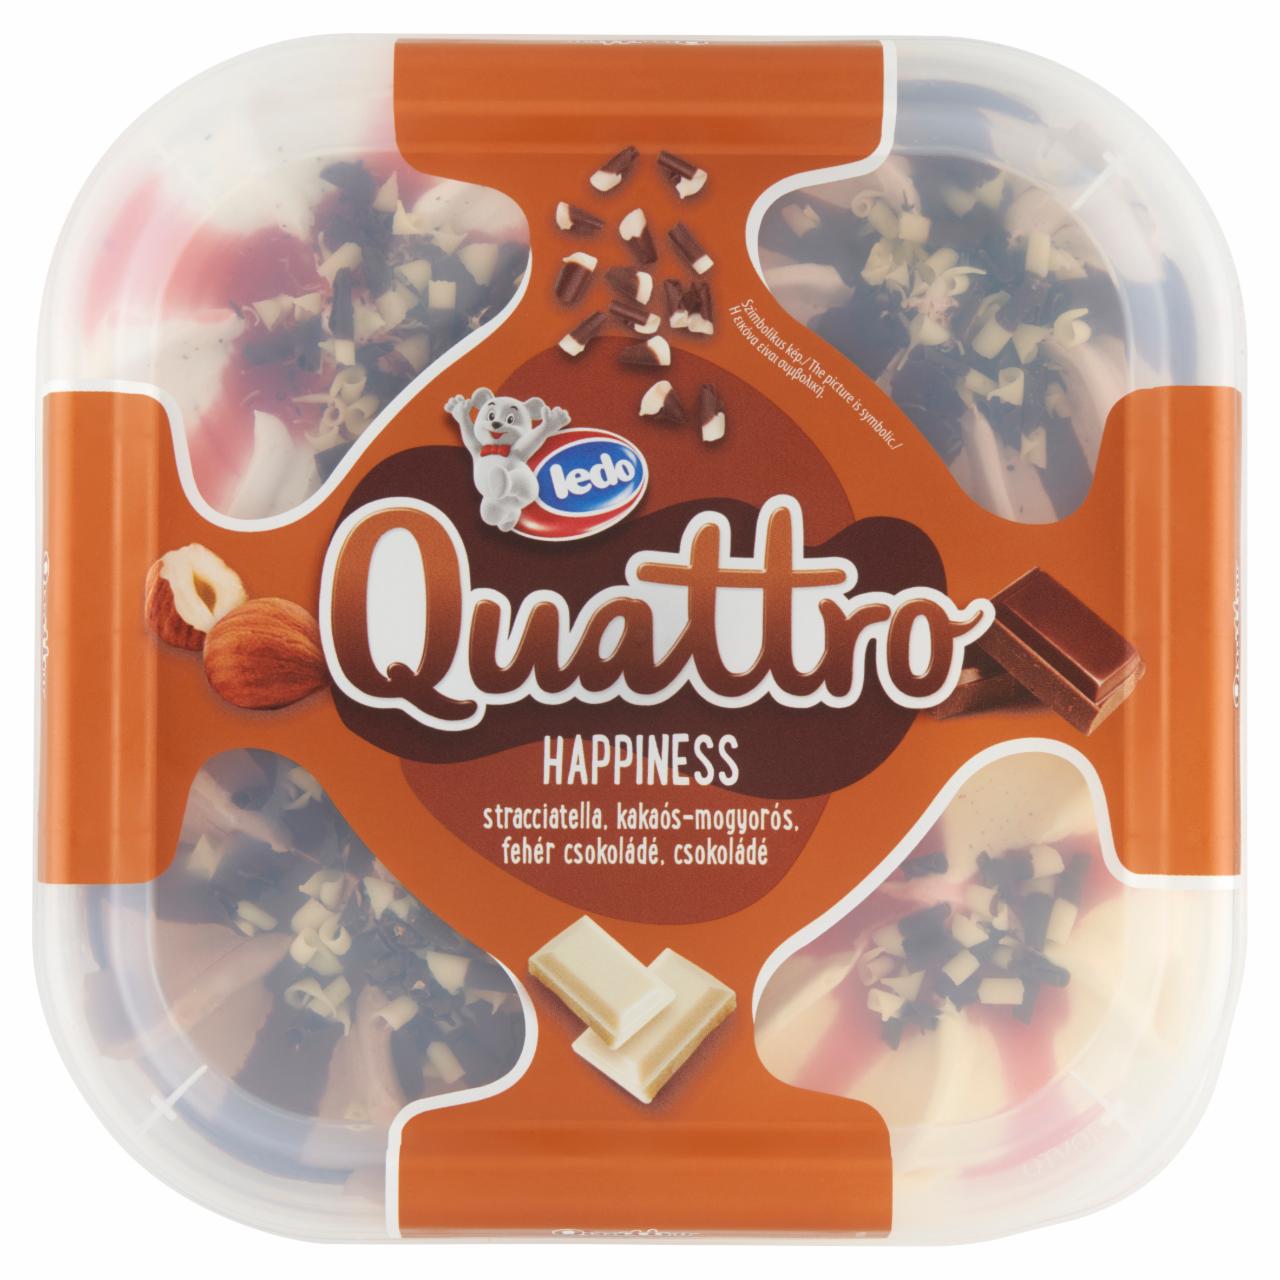 Képek - Ledo Quattro Happiness csokoládés, kakaós-mogyorós, fehér csokoládés, vaníliaízű jégkrém 1650 ml